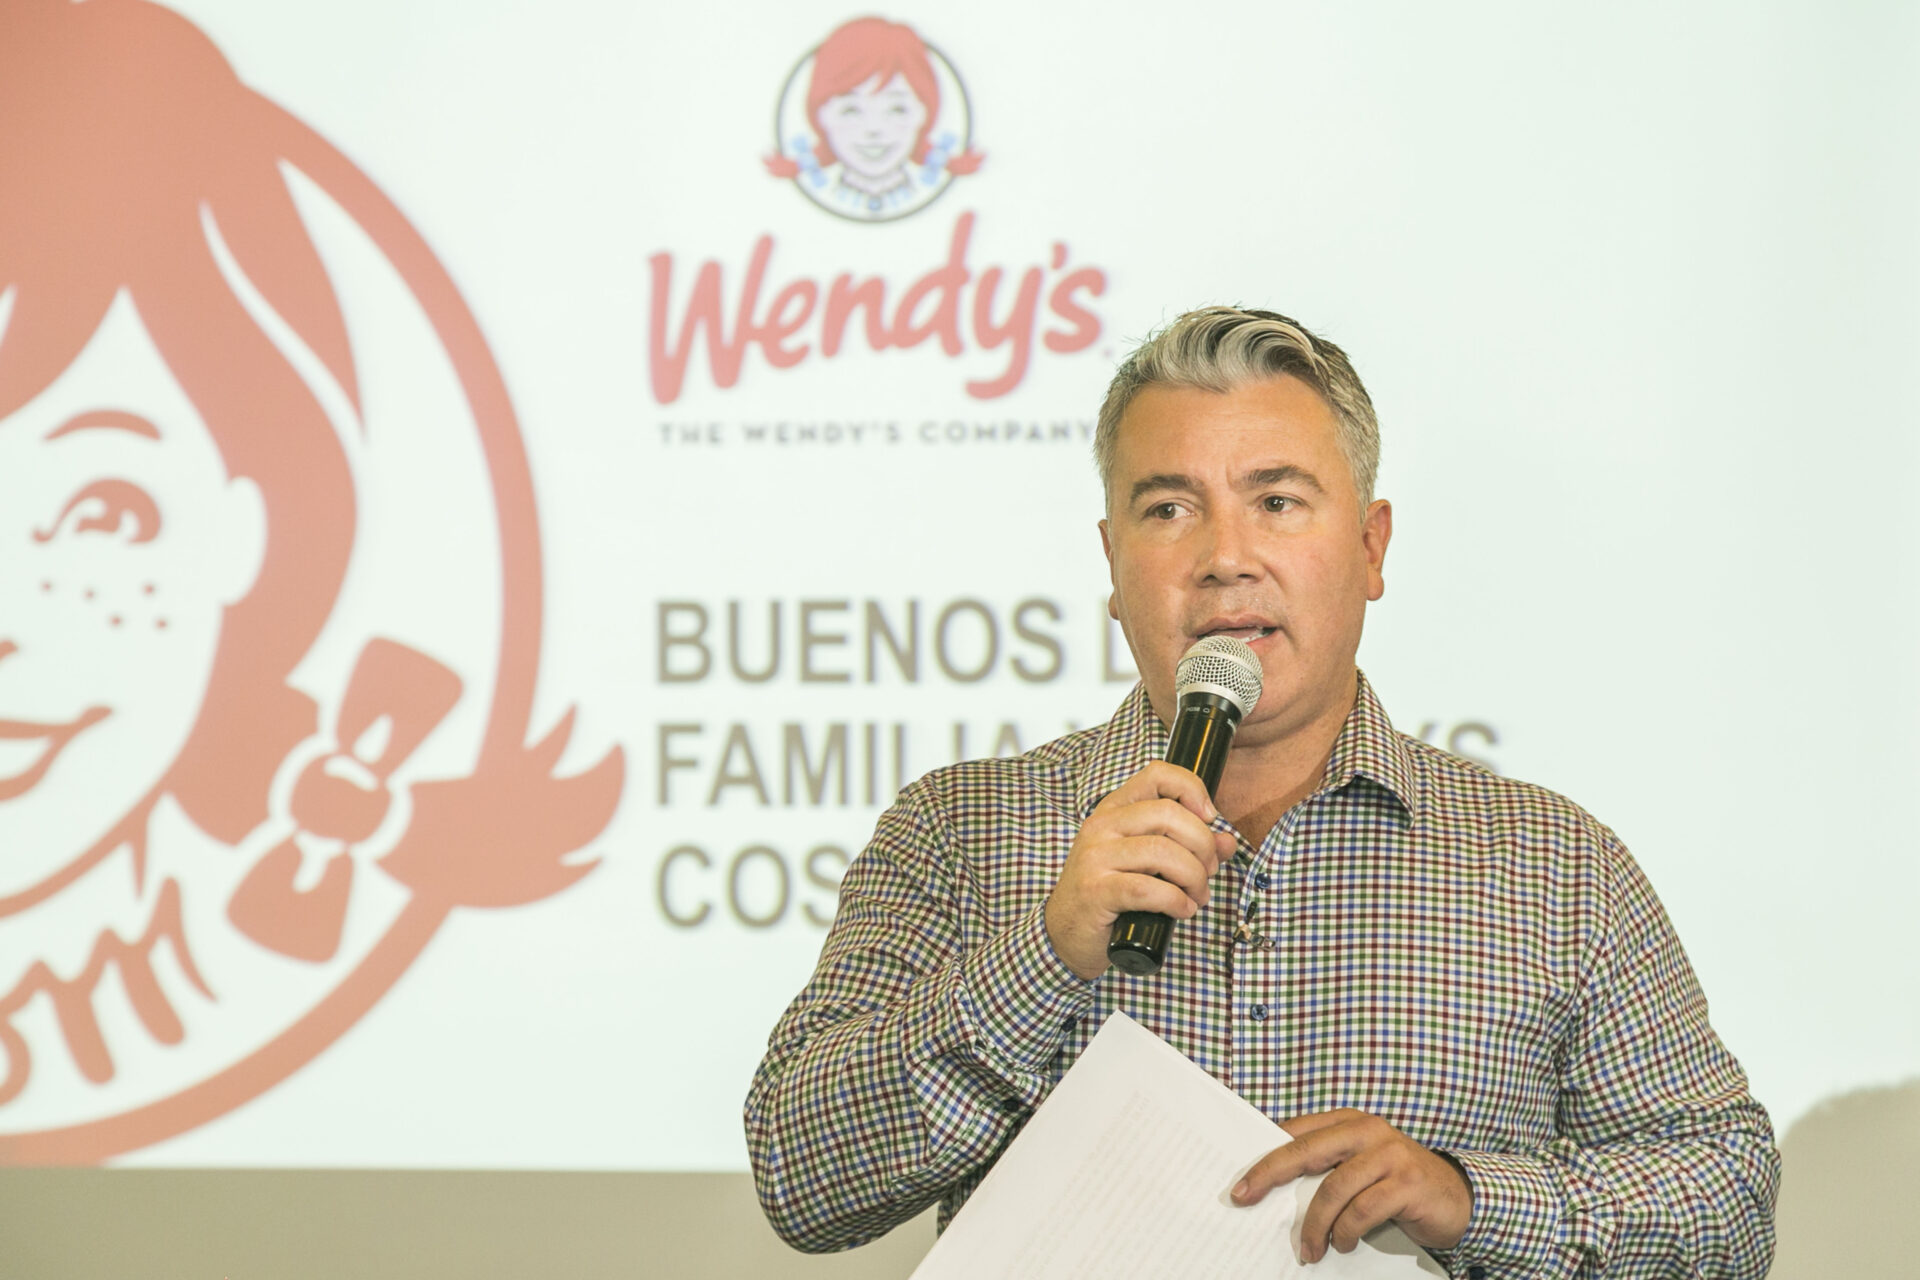 Wendys se fue de Costa Rica por alta competencia en mercado de comidas rápidas